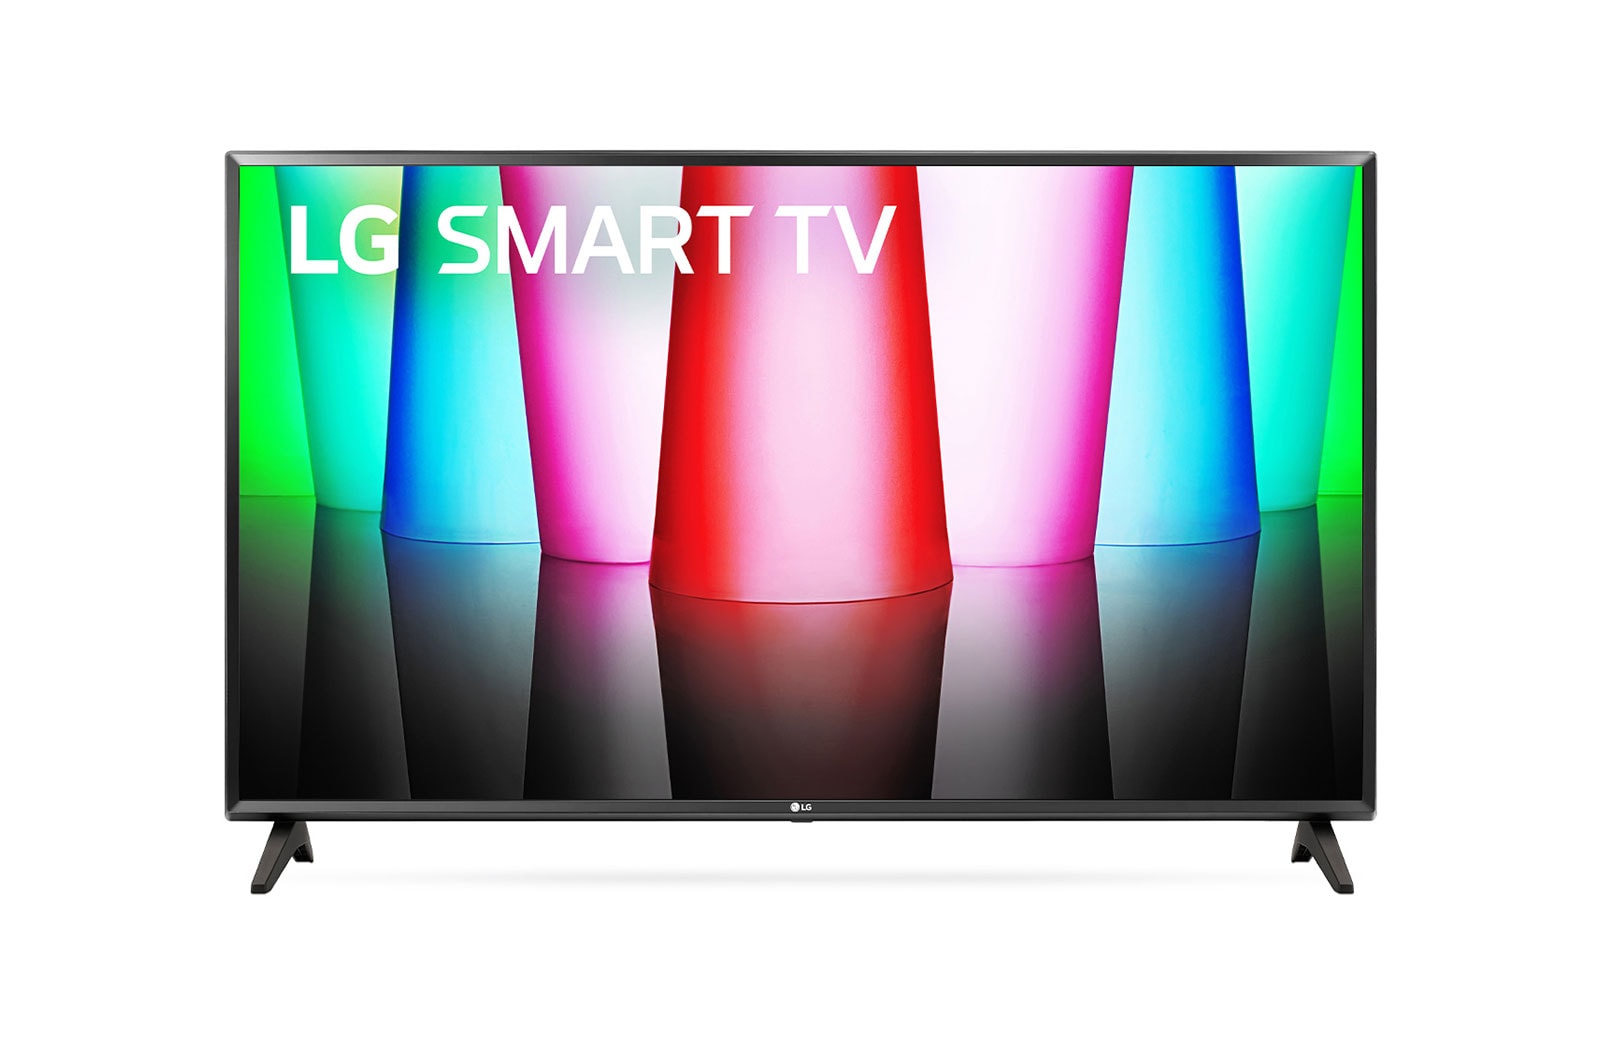 LG 32LQ62, Hình ảnh mặt trước của TV LG Full HD với hình ảnh bên trong và logo sản phẩm trên, 32LQ576BPSA